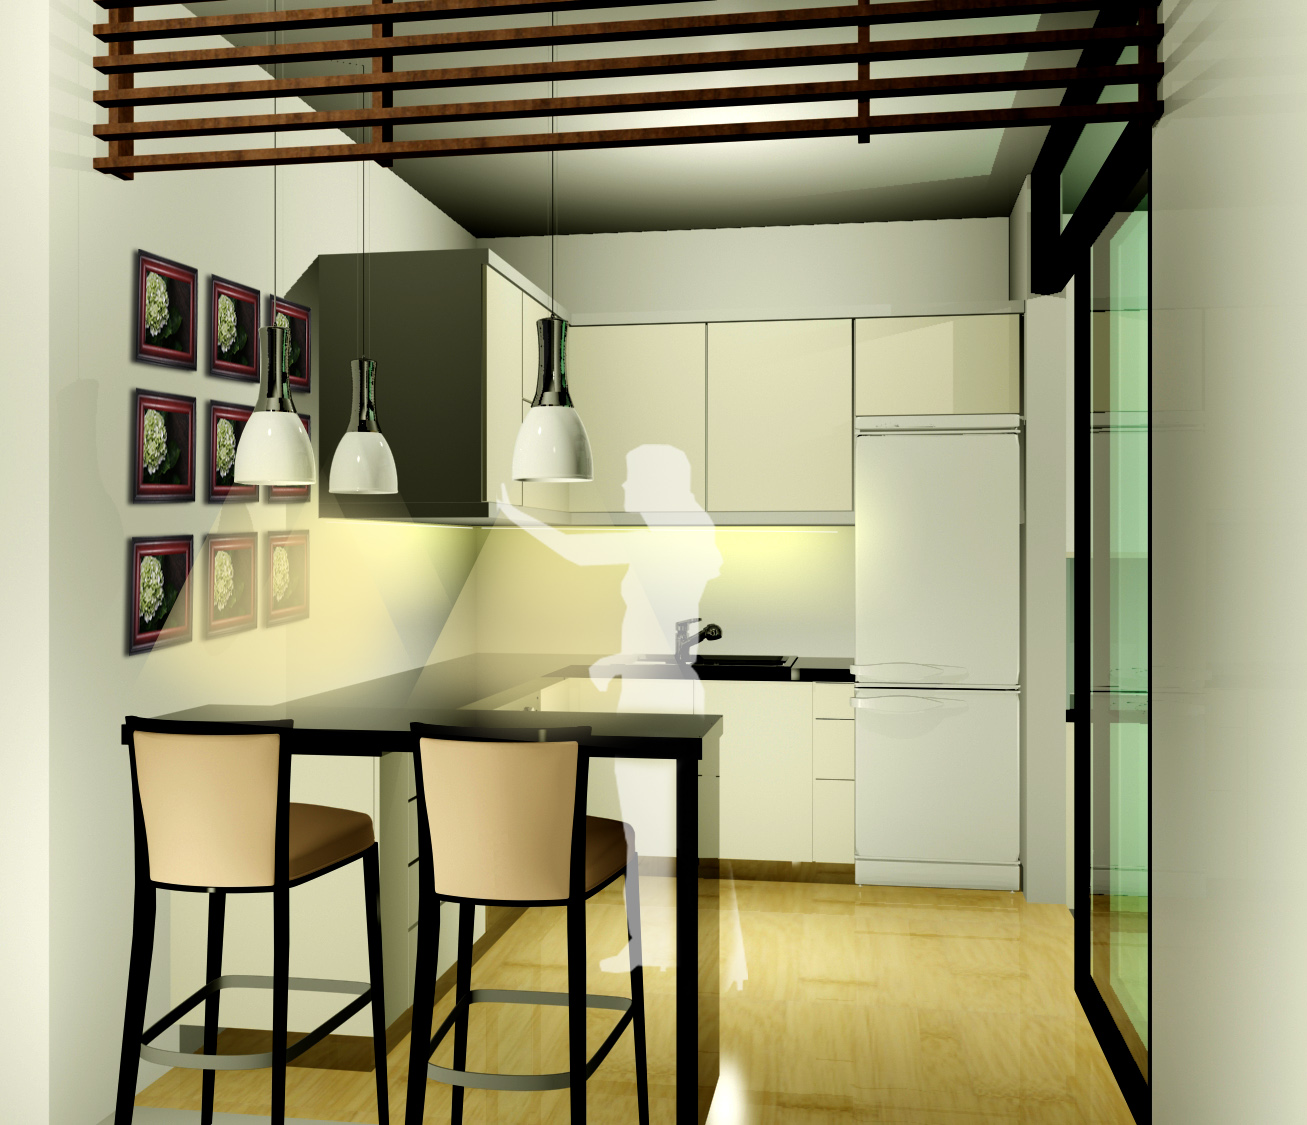  Ruang  dapur  kering Kontemporer Info Desain Dapur  2014